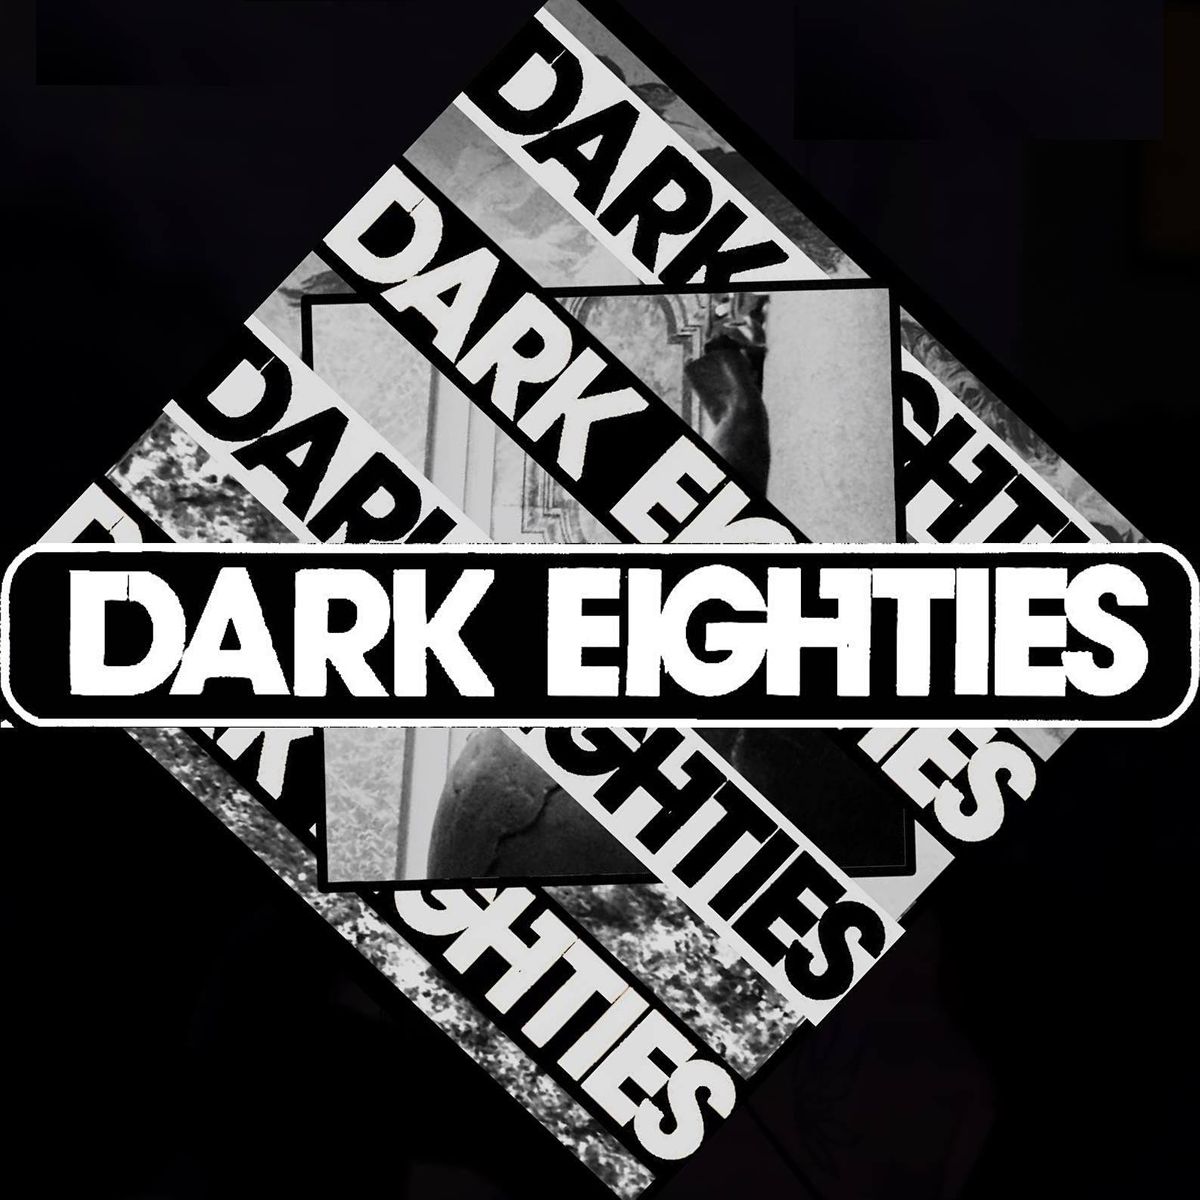 The Dark Eighties: 2 Year Anniversary Party